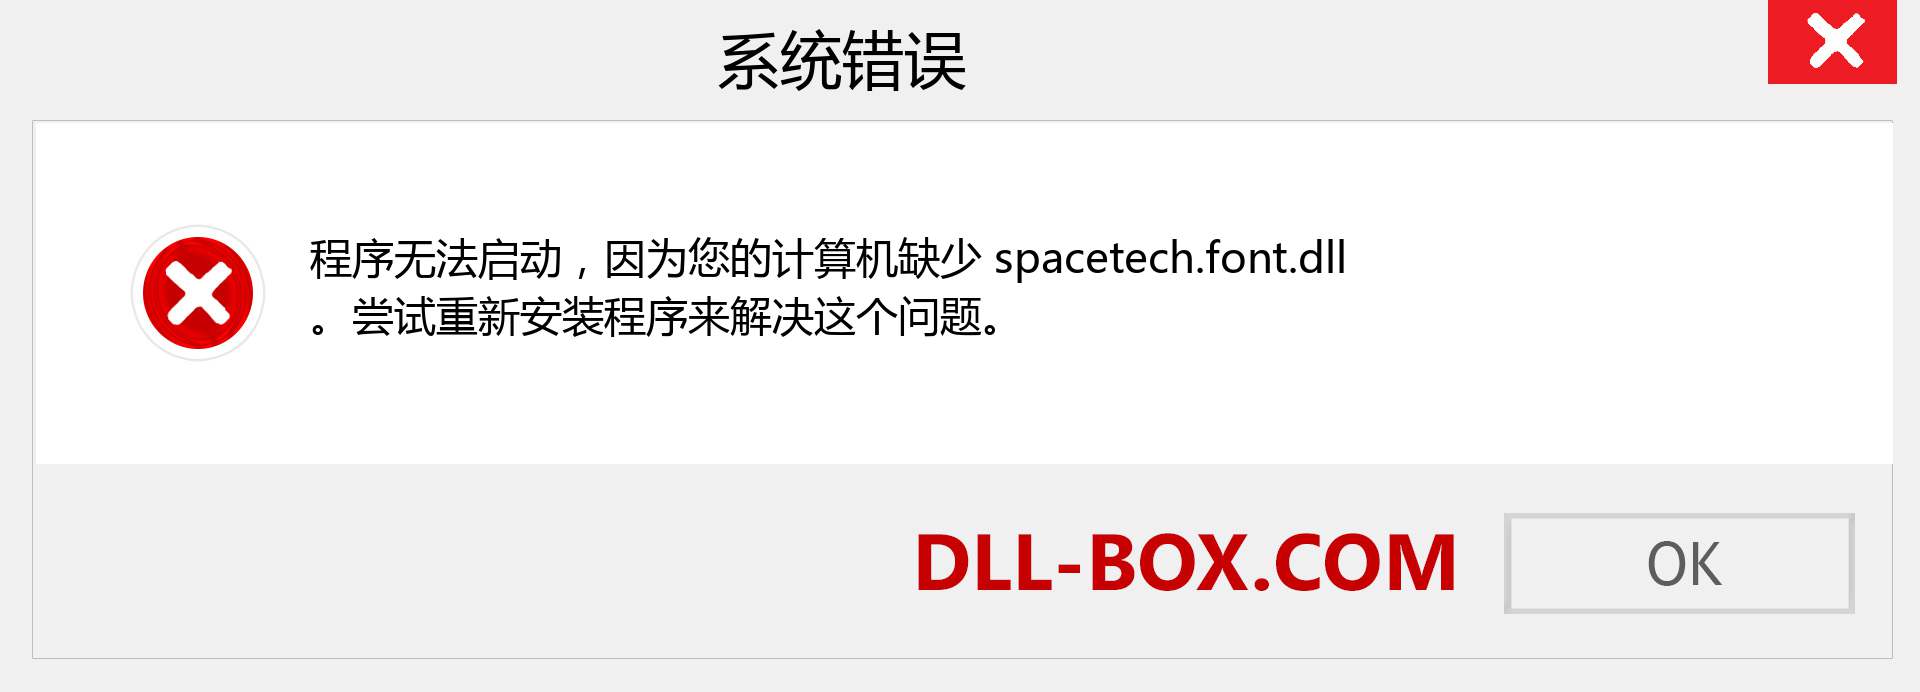 spacetech.font.dll 文件丢失？。 适用于 Windows 7、8、10 的下载 - 修复 Windows、照片、图像上的 spacetech.font dll 丢失错误